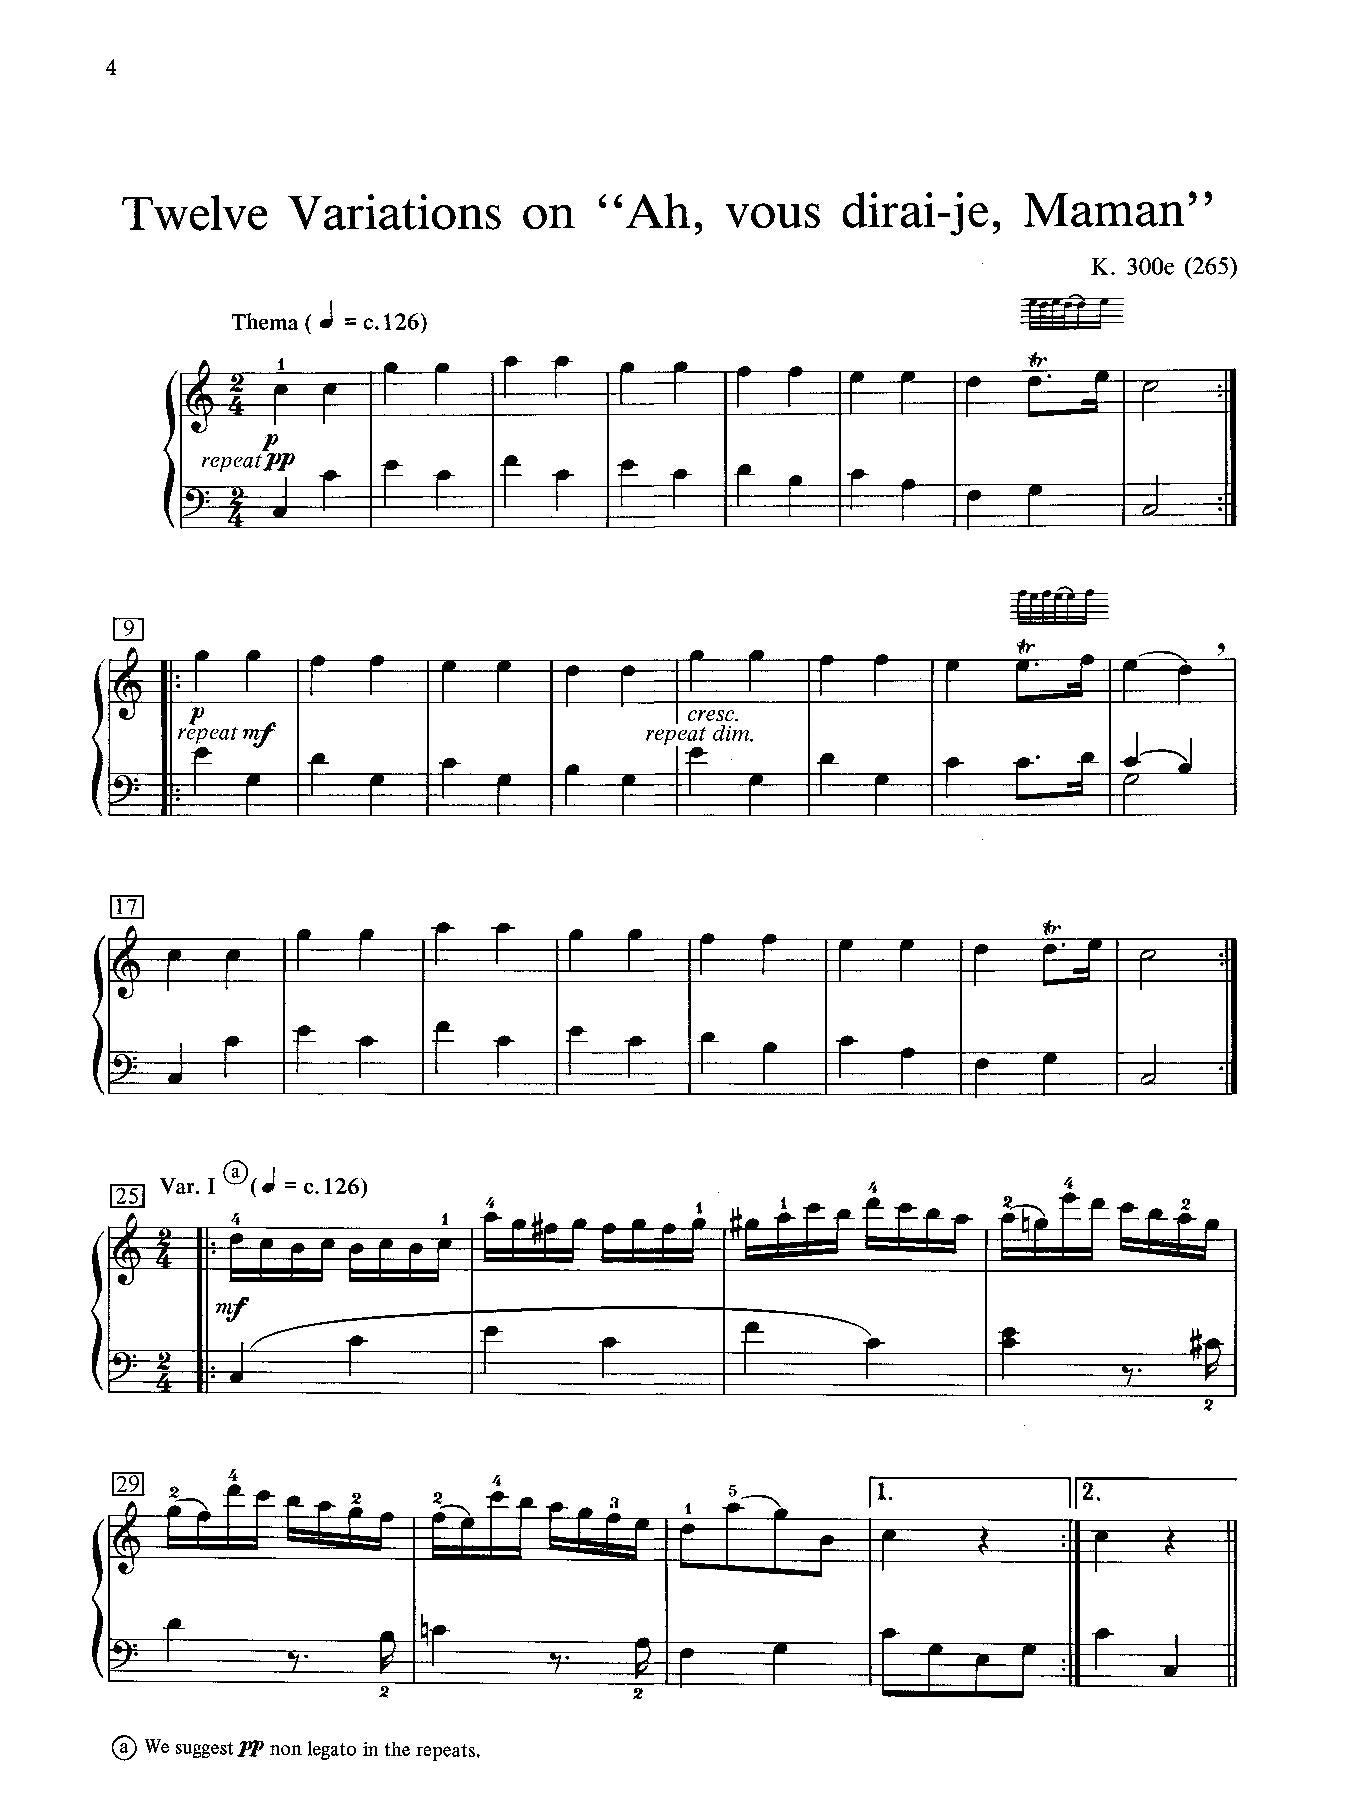 Mozart: 12 Variations on "Ah, vous dirai-je, Maman," K. 265